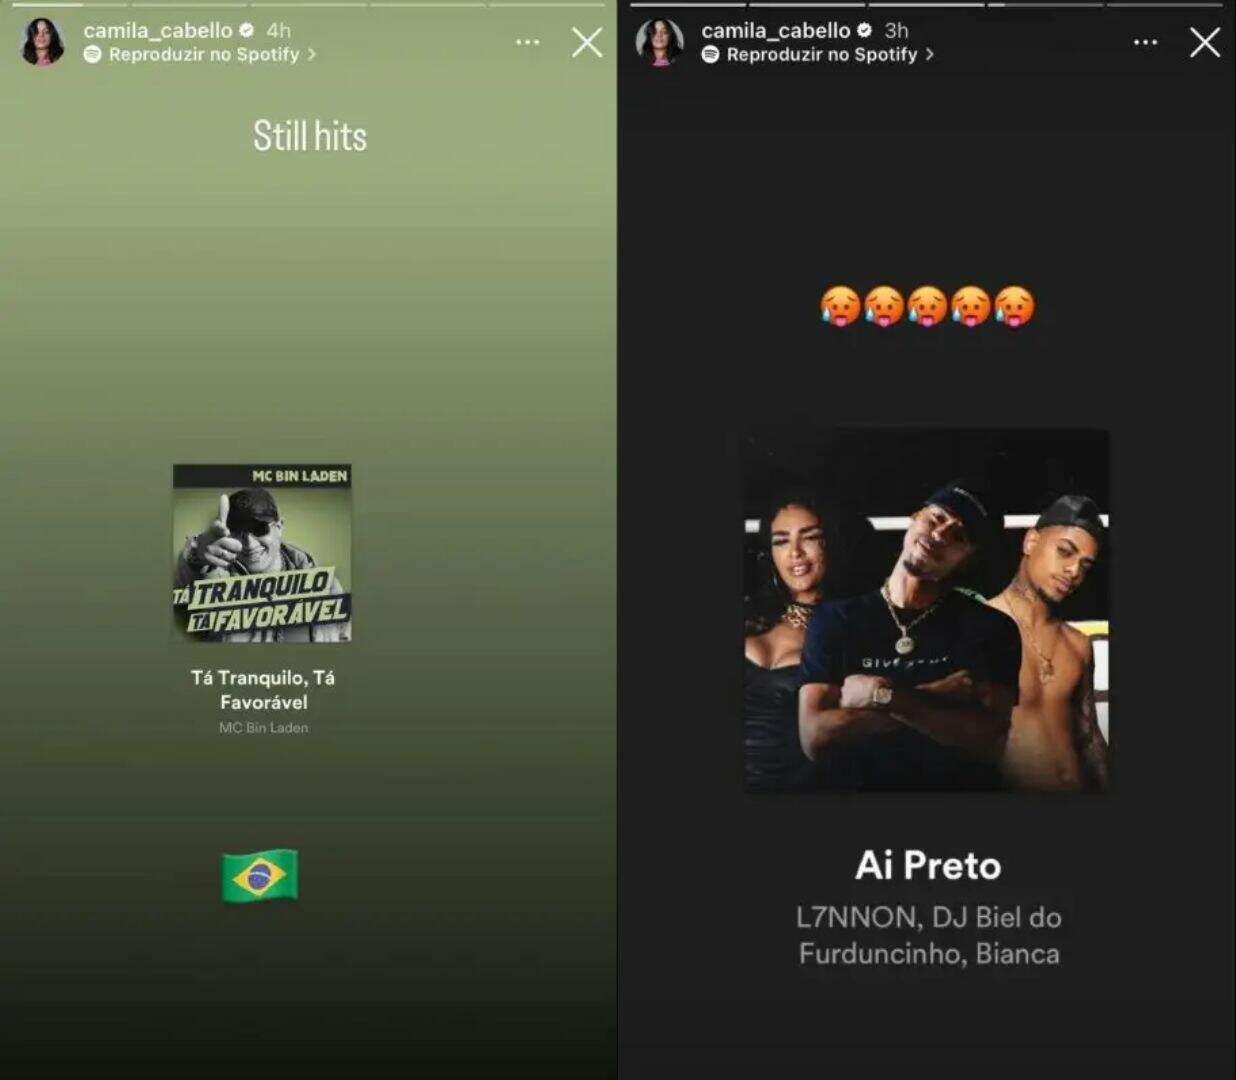 Esta não é a primeira vez que Camila Cabello compartilha seus gostos musicais em seu perfil no Instagram 